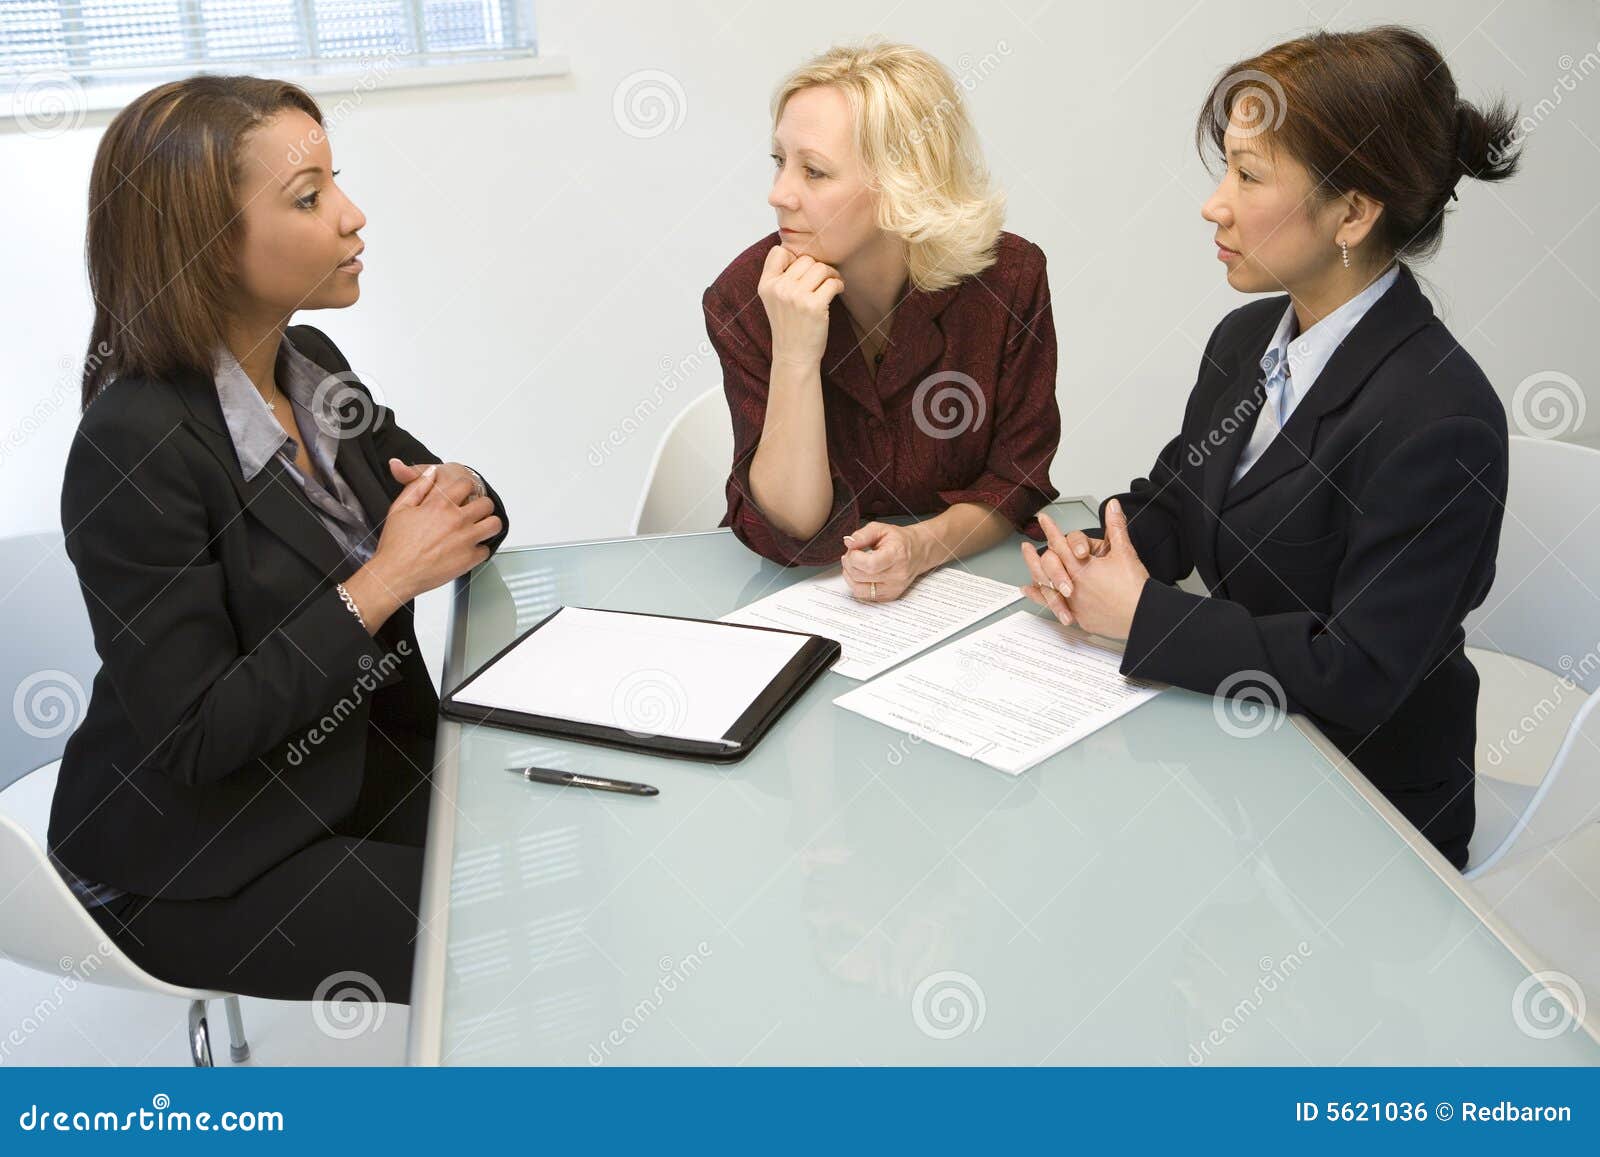 three businesswomen at desk